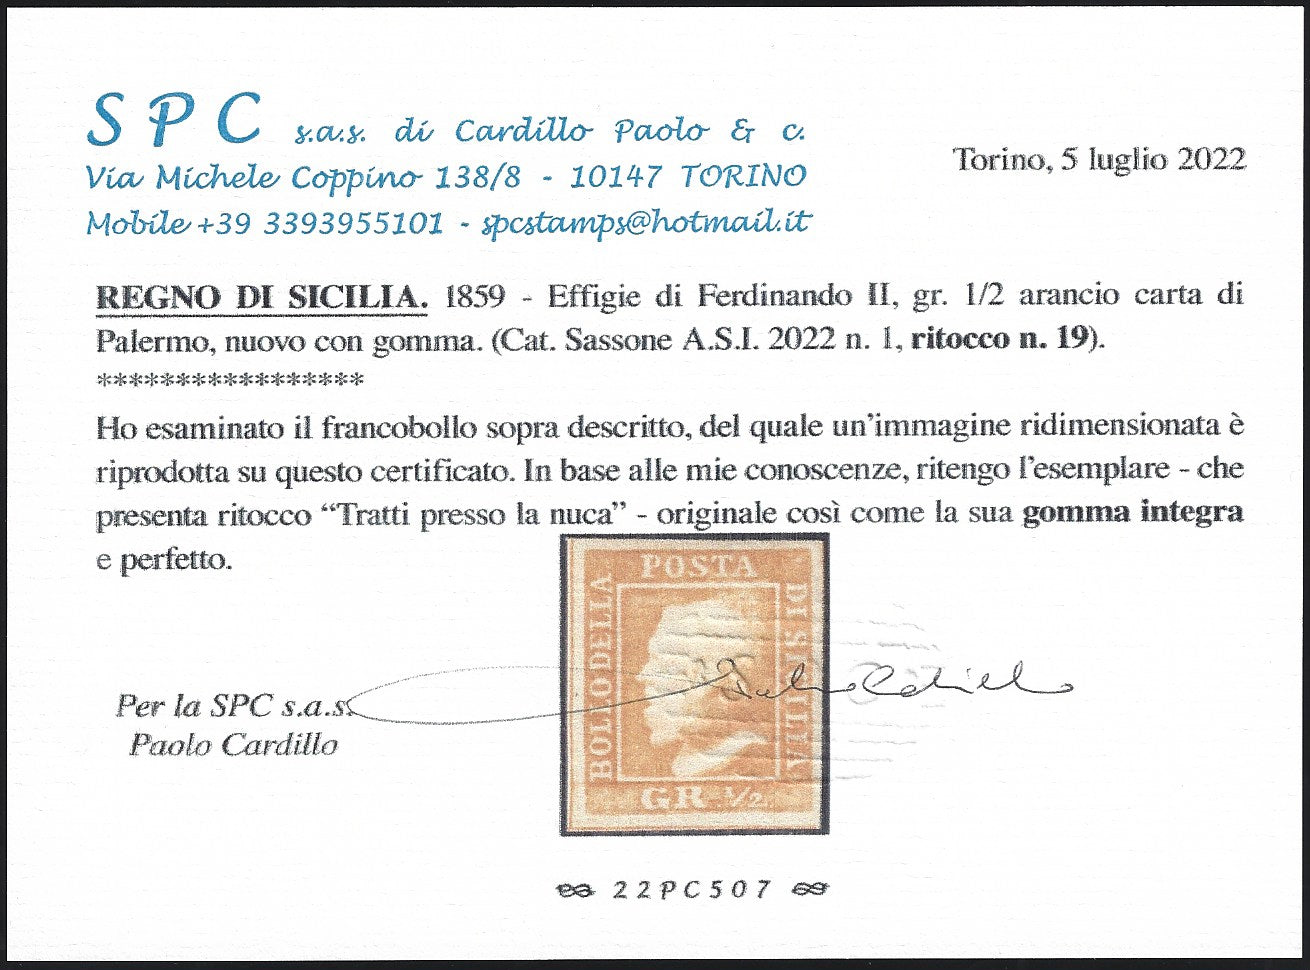 1859 - 1/2 grano arancio I tavola carta di Palermo ritocco n. 19 nuovo con gomma integra (1)